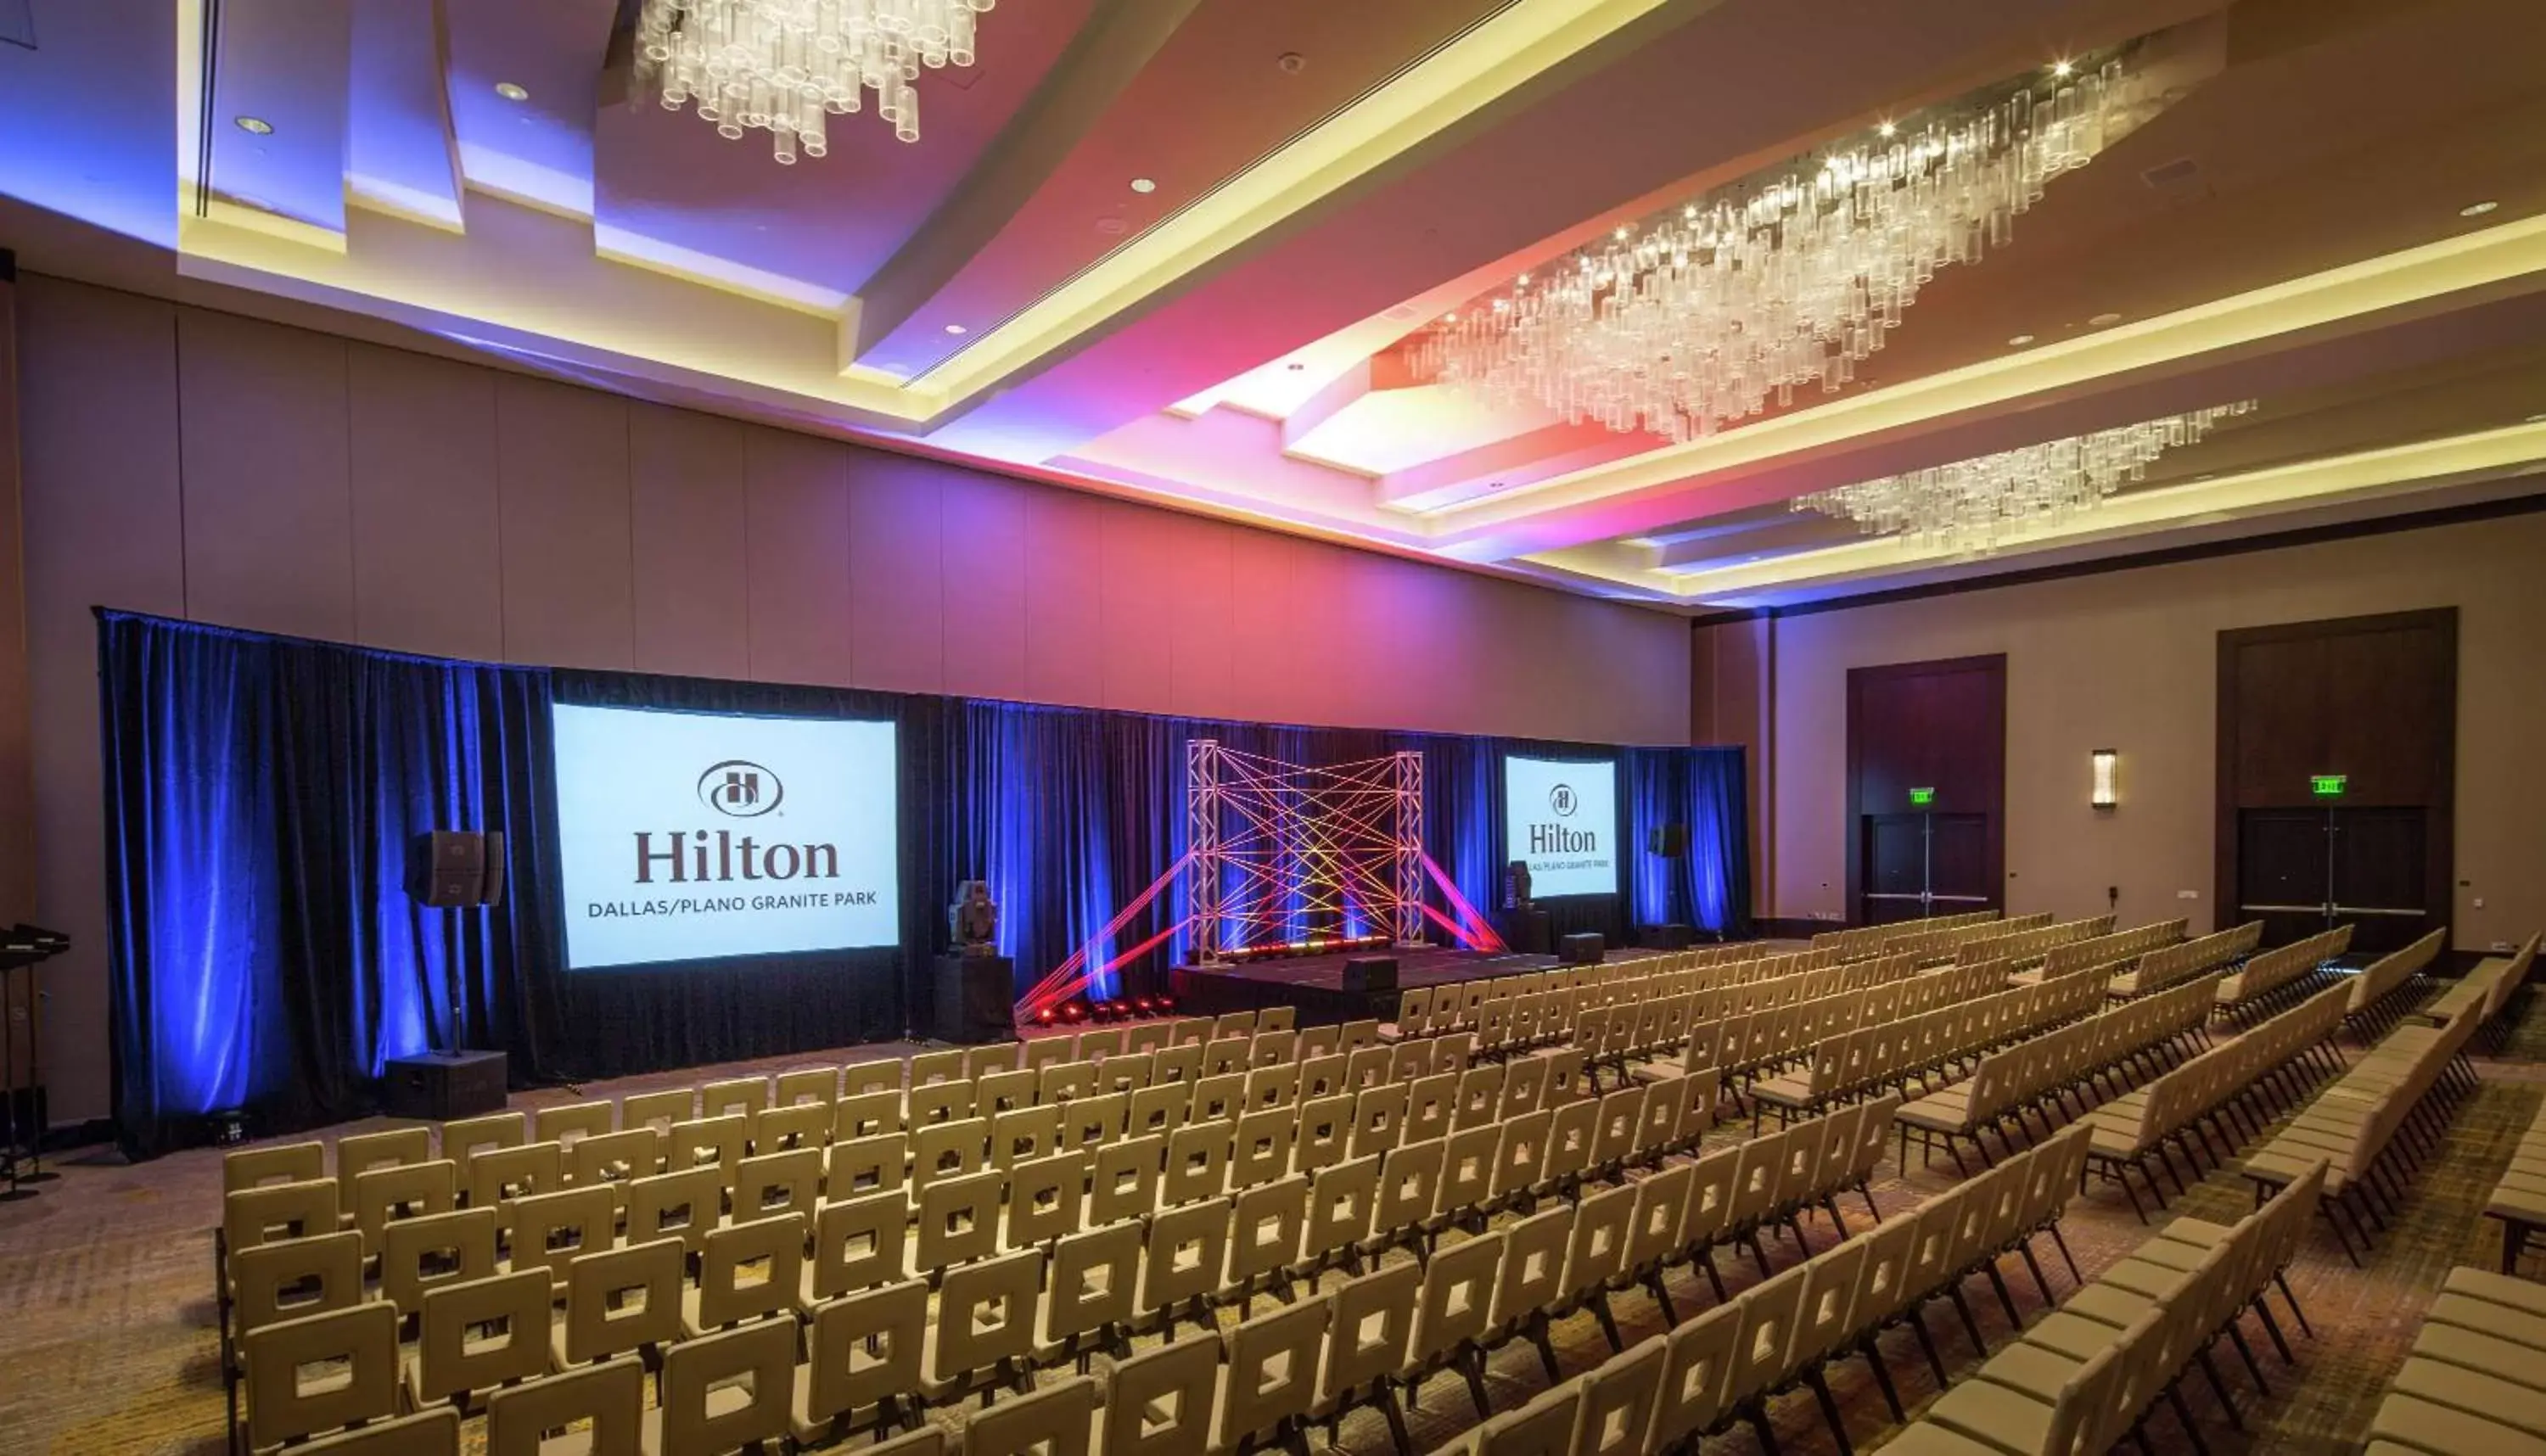 Meeting/conference room in Hilton Dallas/Plano Granite Park